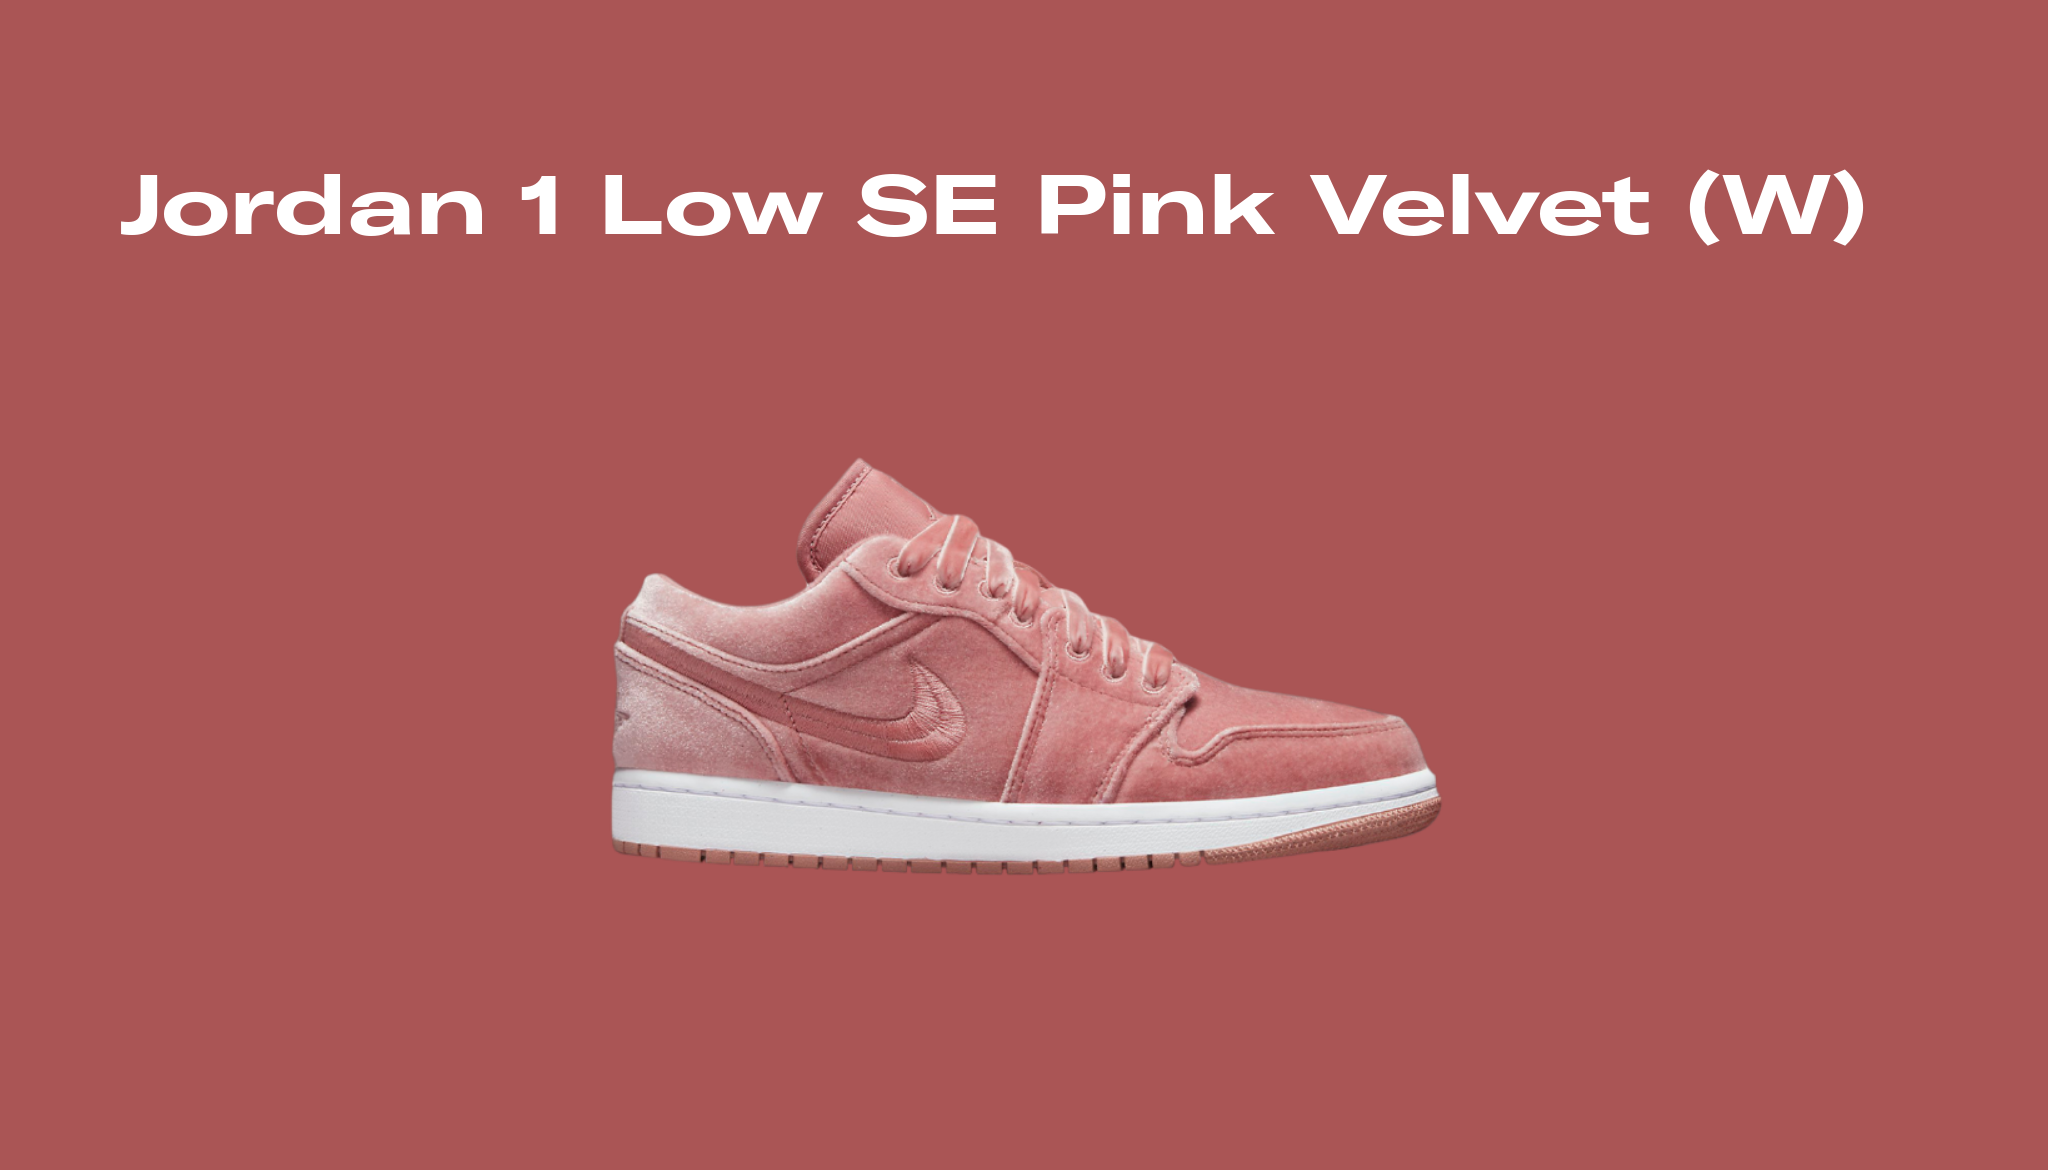 Jordan 1 Low SE Pink Velvet (W), Raffles and Release Date | Sole